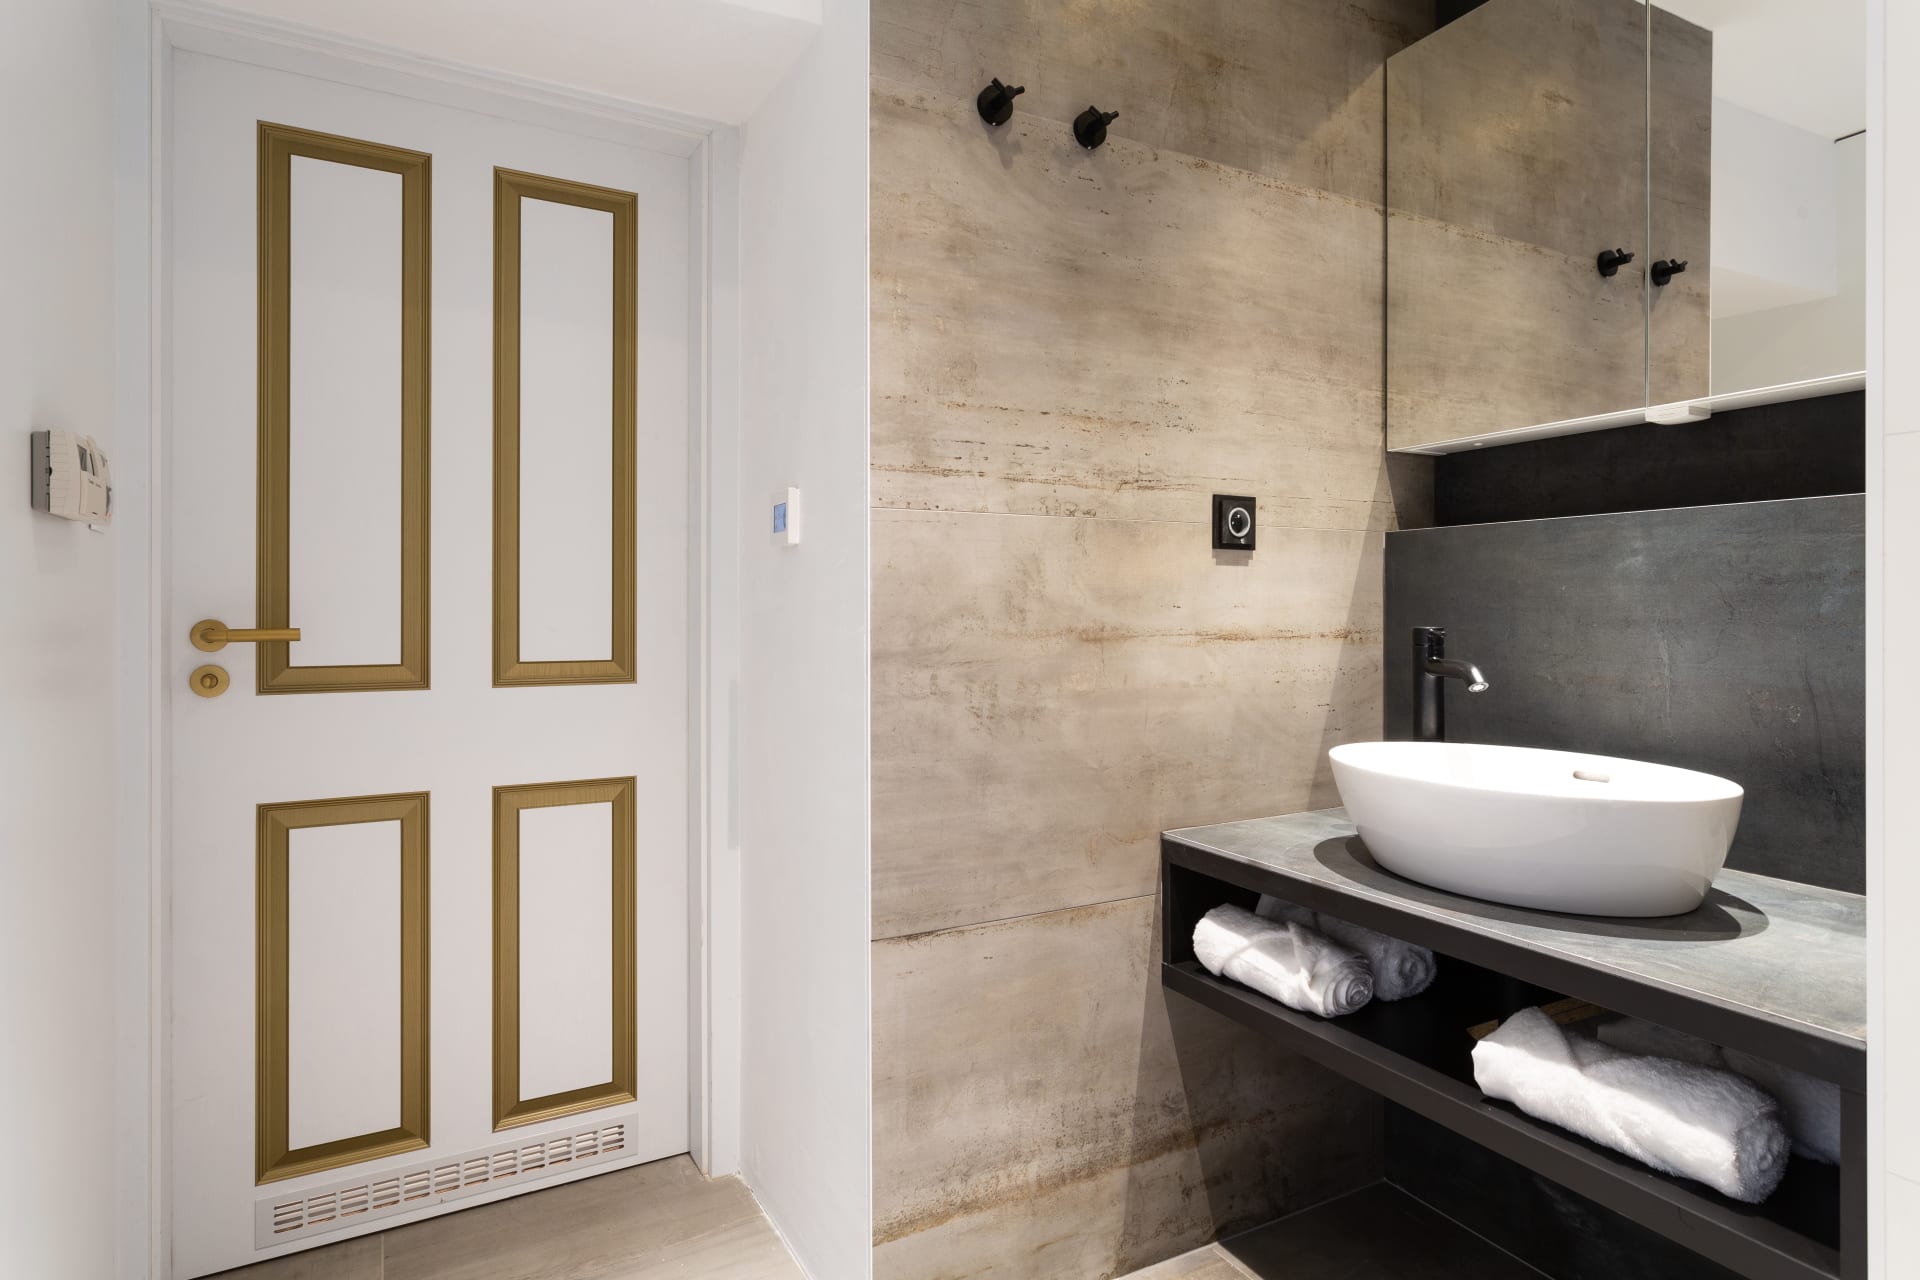 Jak se staví sen: Koupelna zaznamenala více změn. Ta je zcela přepracovaná, je laděna do bílých, šedých a černých odstínů v kombinaci s černými a zlatými doplňky.